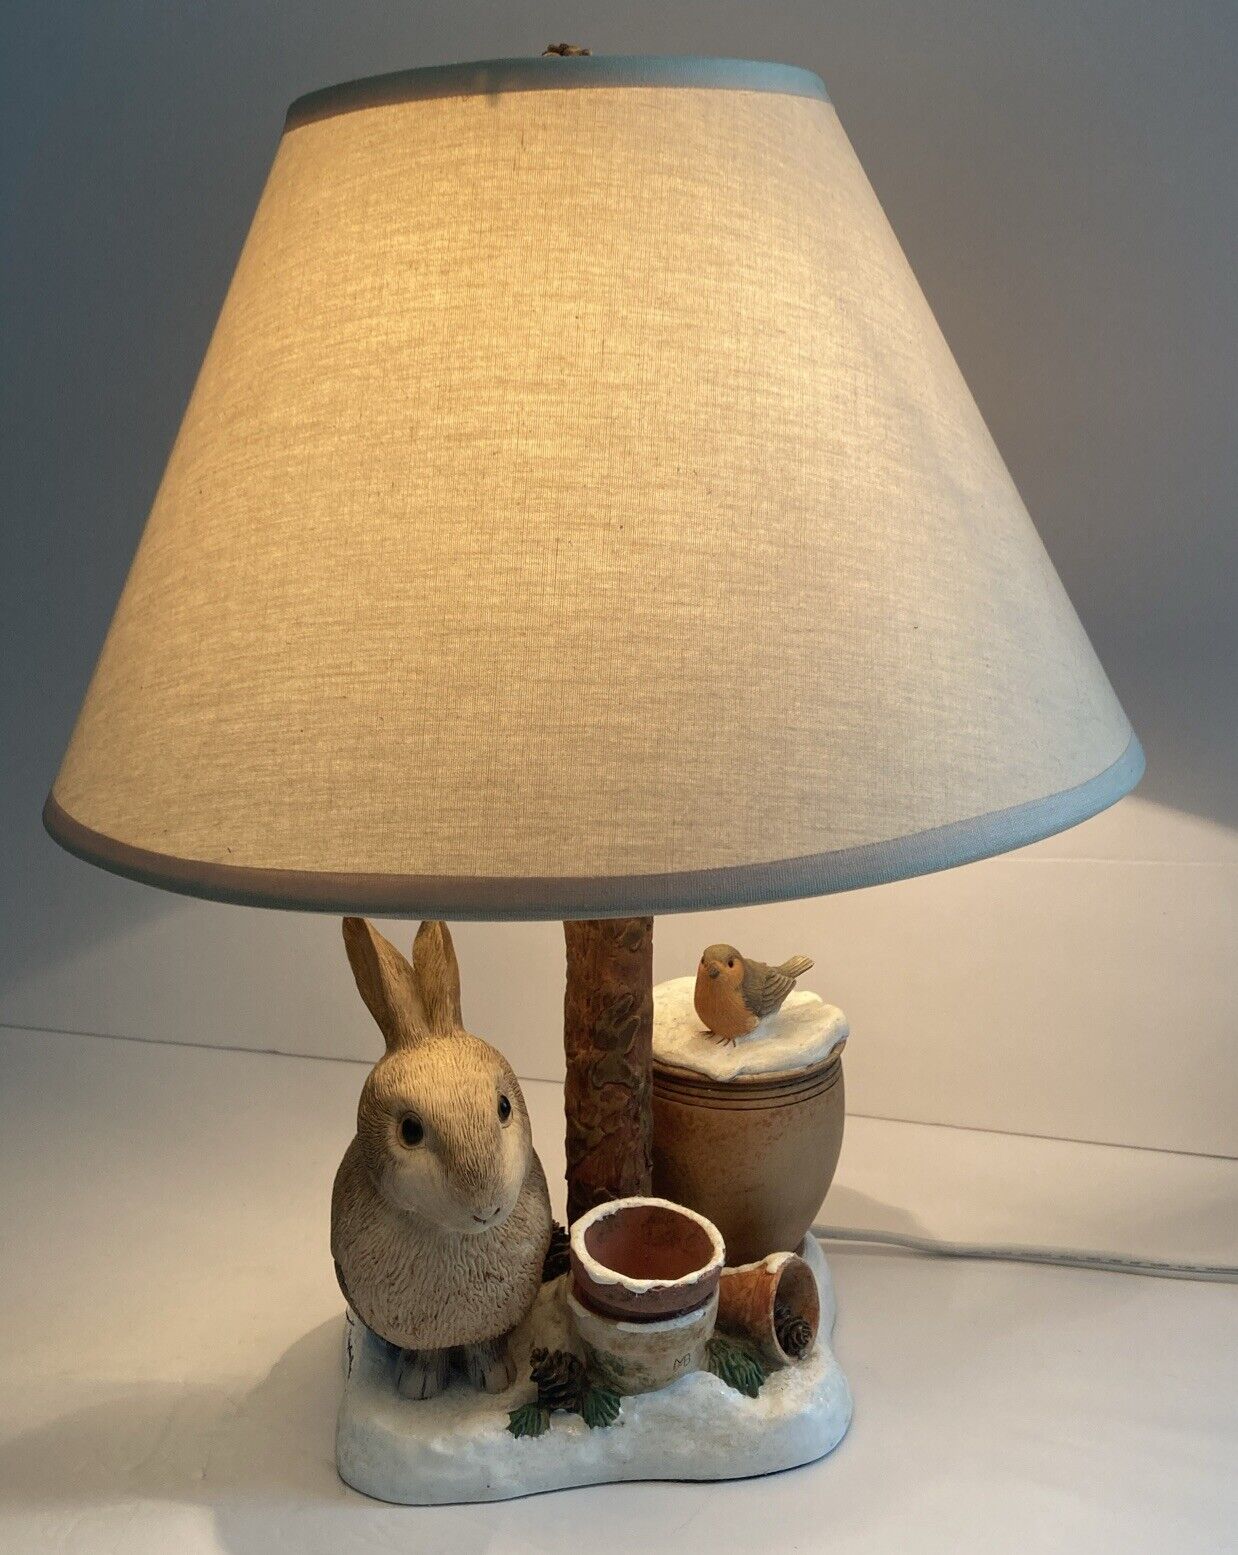 Hallmark Marjolein Bastin table lamp Rabbit, Bird, Pots Retired Tested